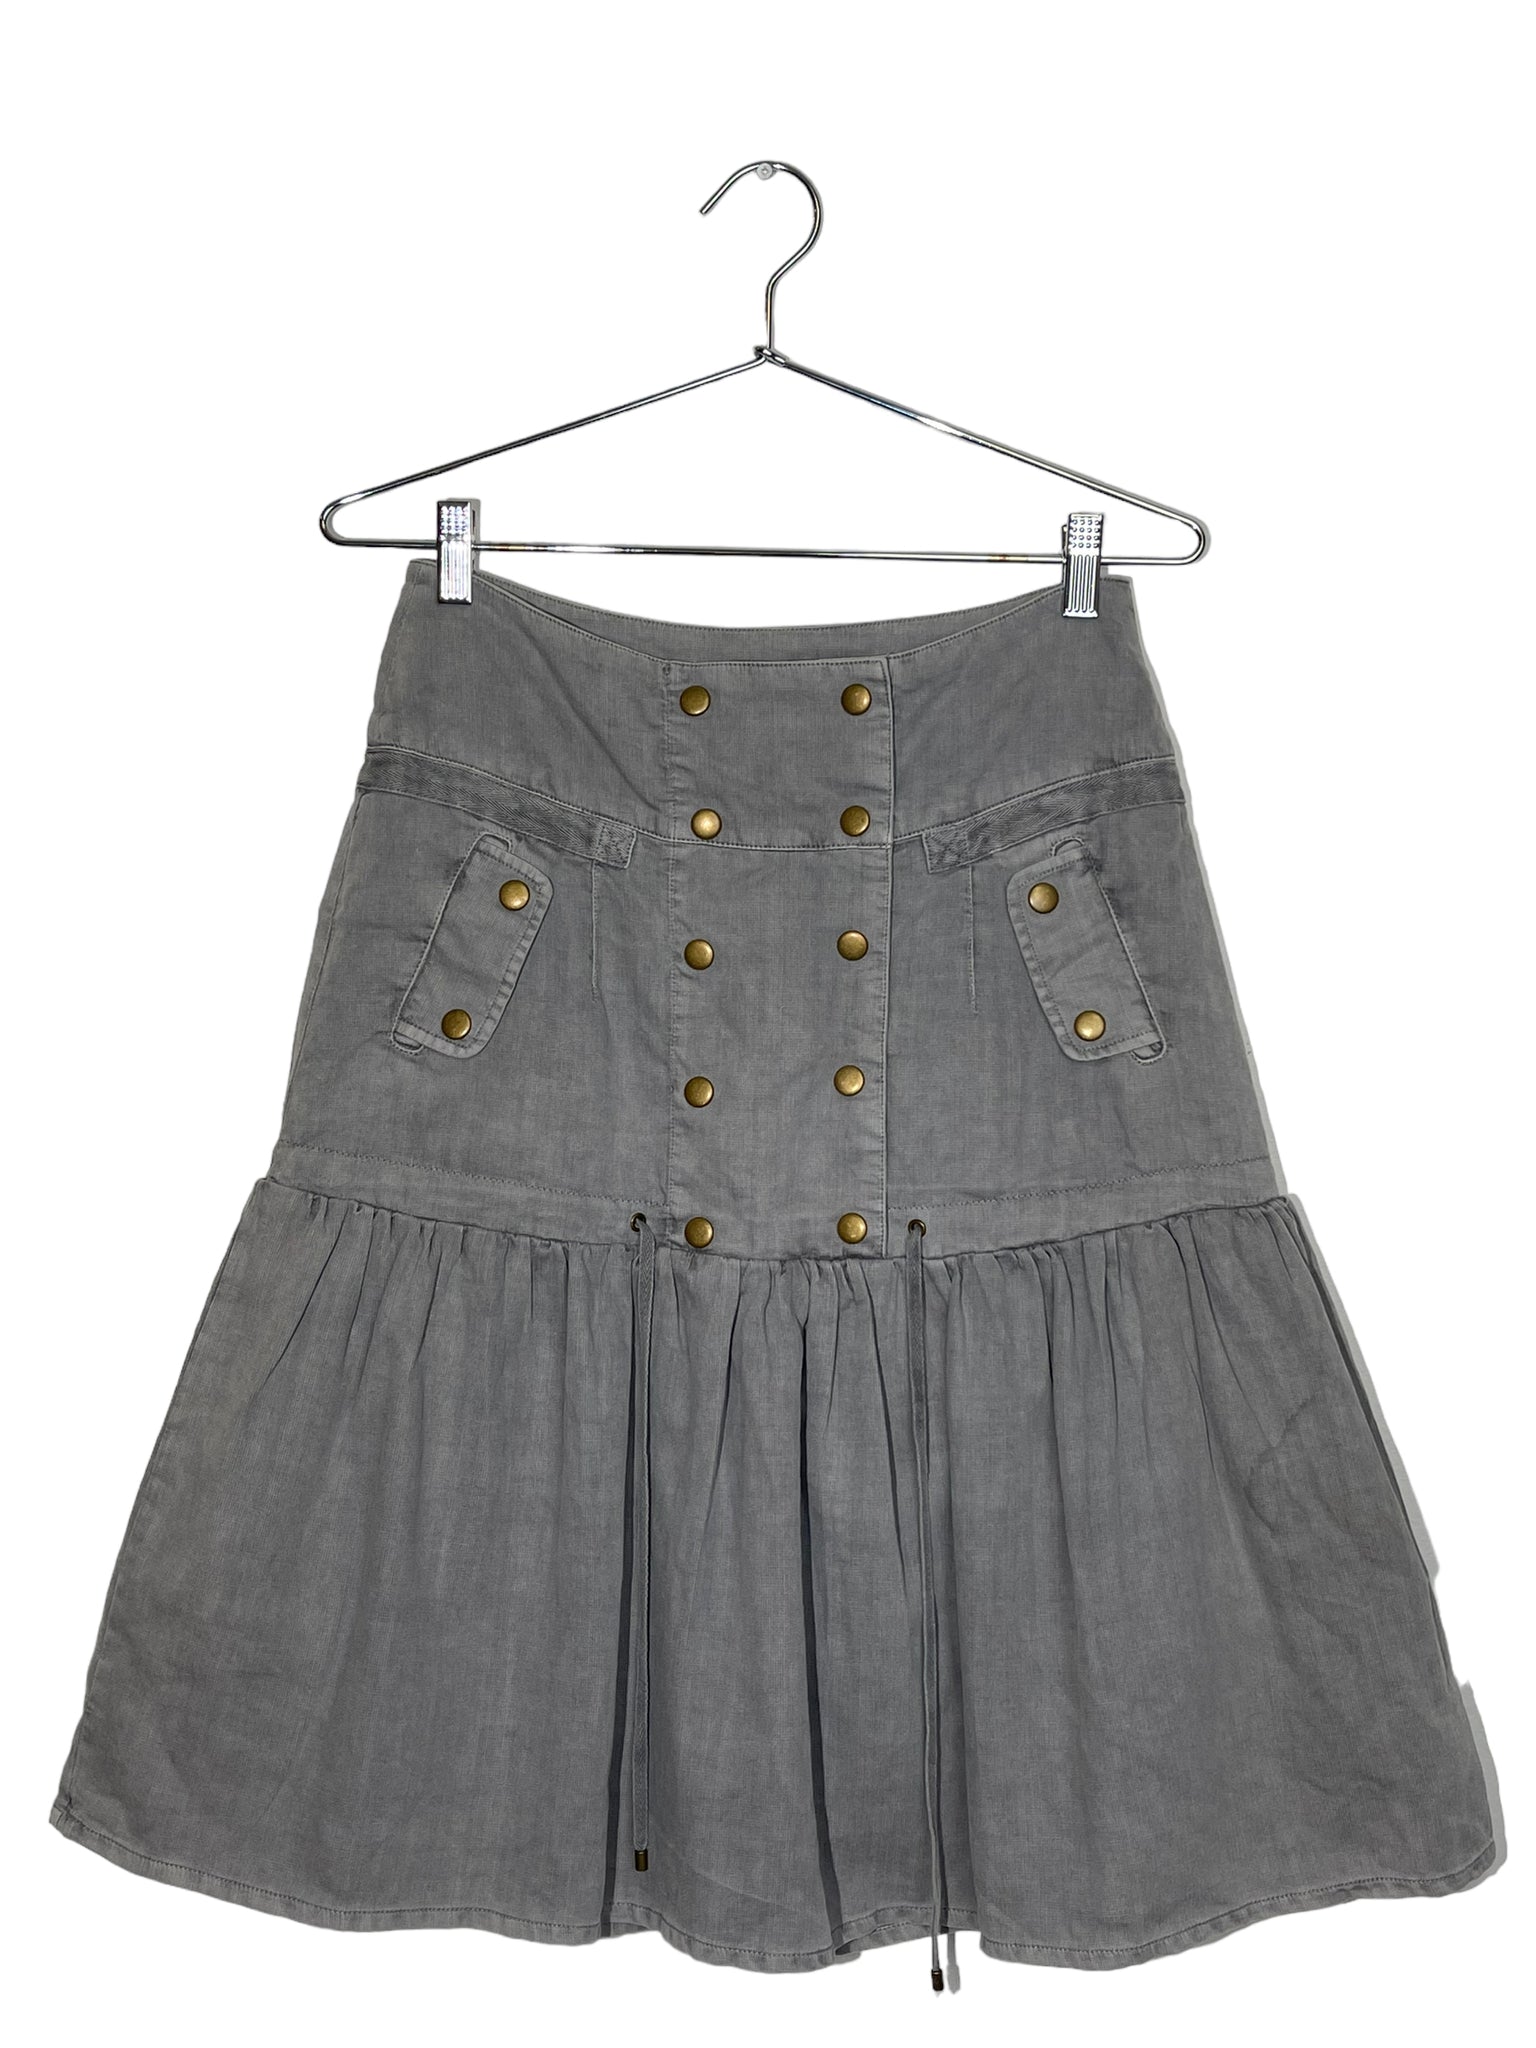 Vero Moda Grey Double Button Skirt